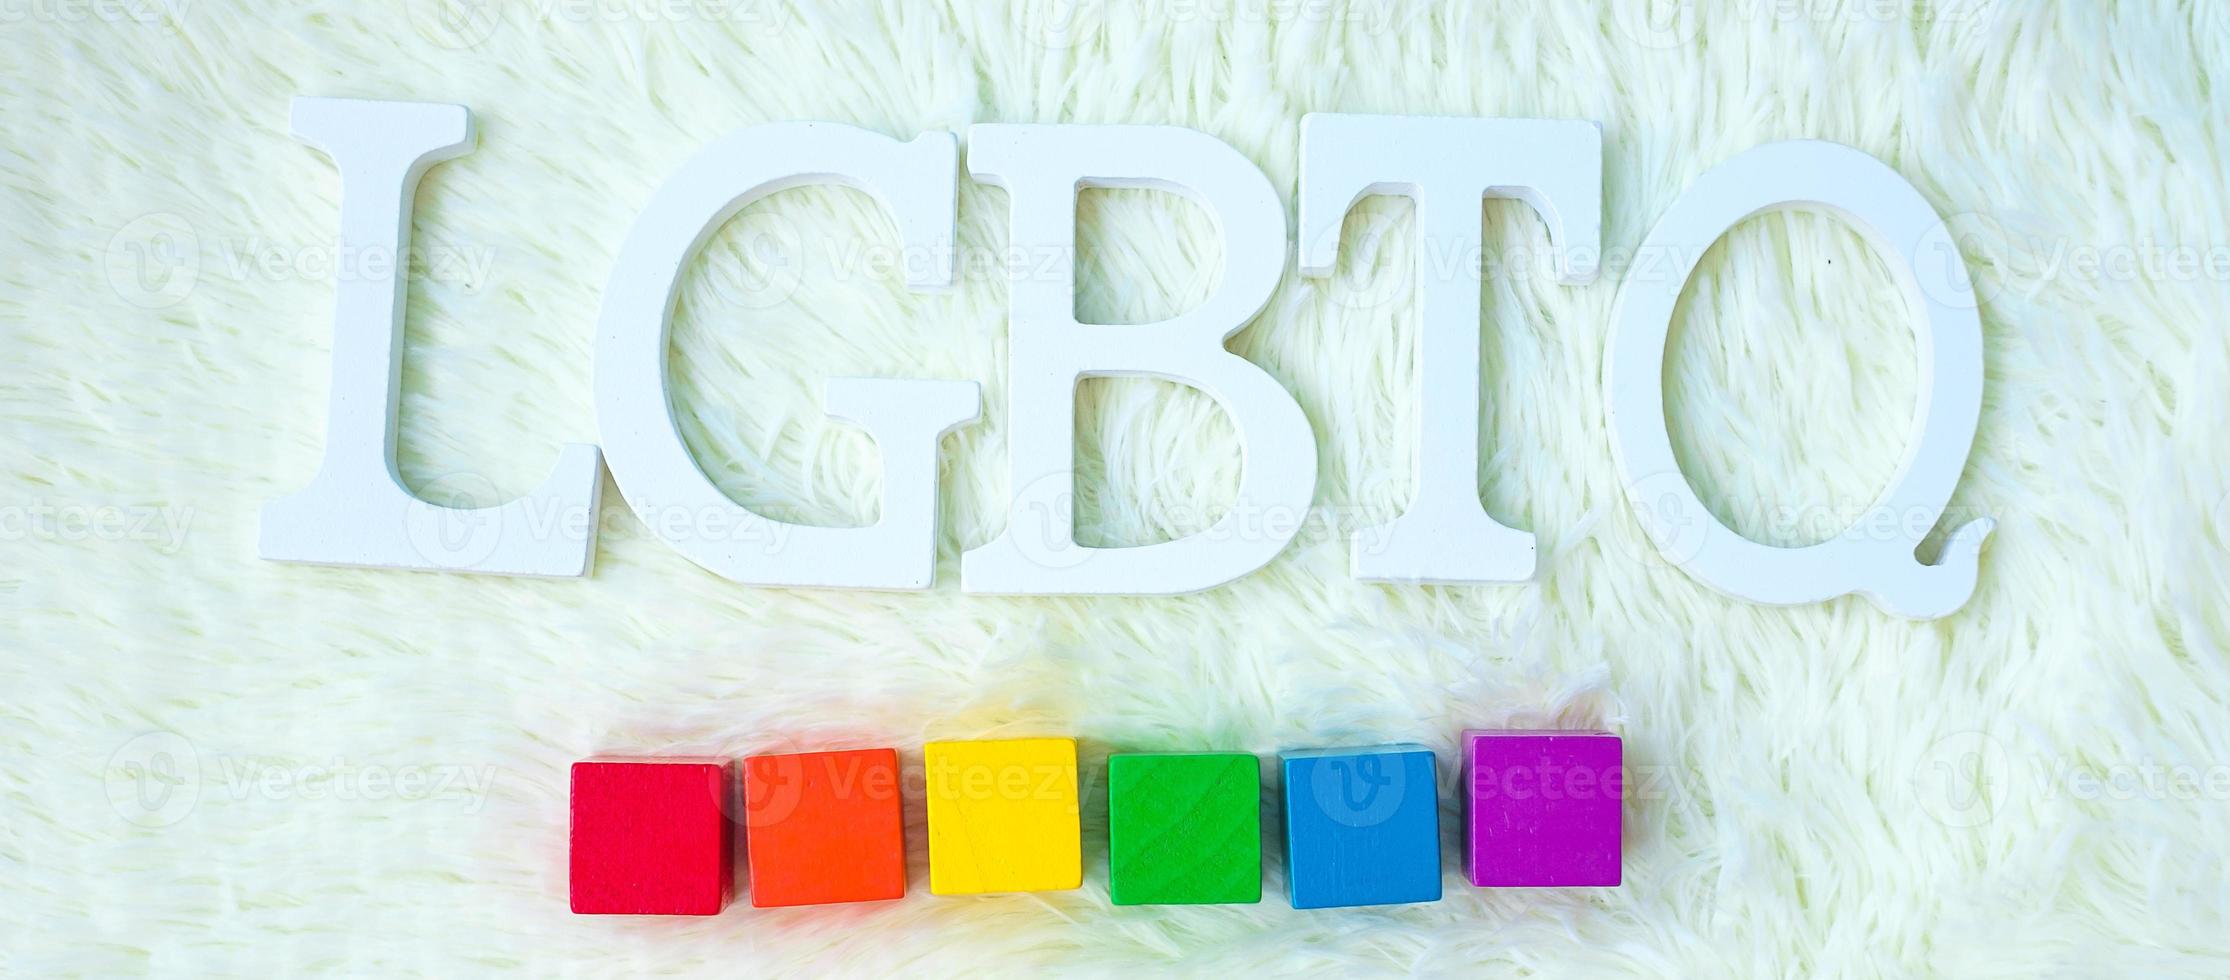 bloque de arco iris lgbtq sobre fondo blanco. apoyar la comunidad lesbiana, gay, bisexual, transgénero y queer y el concepto del mes del orgullo foto